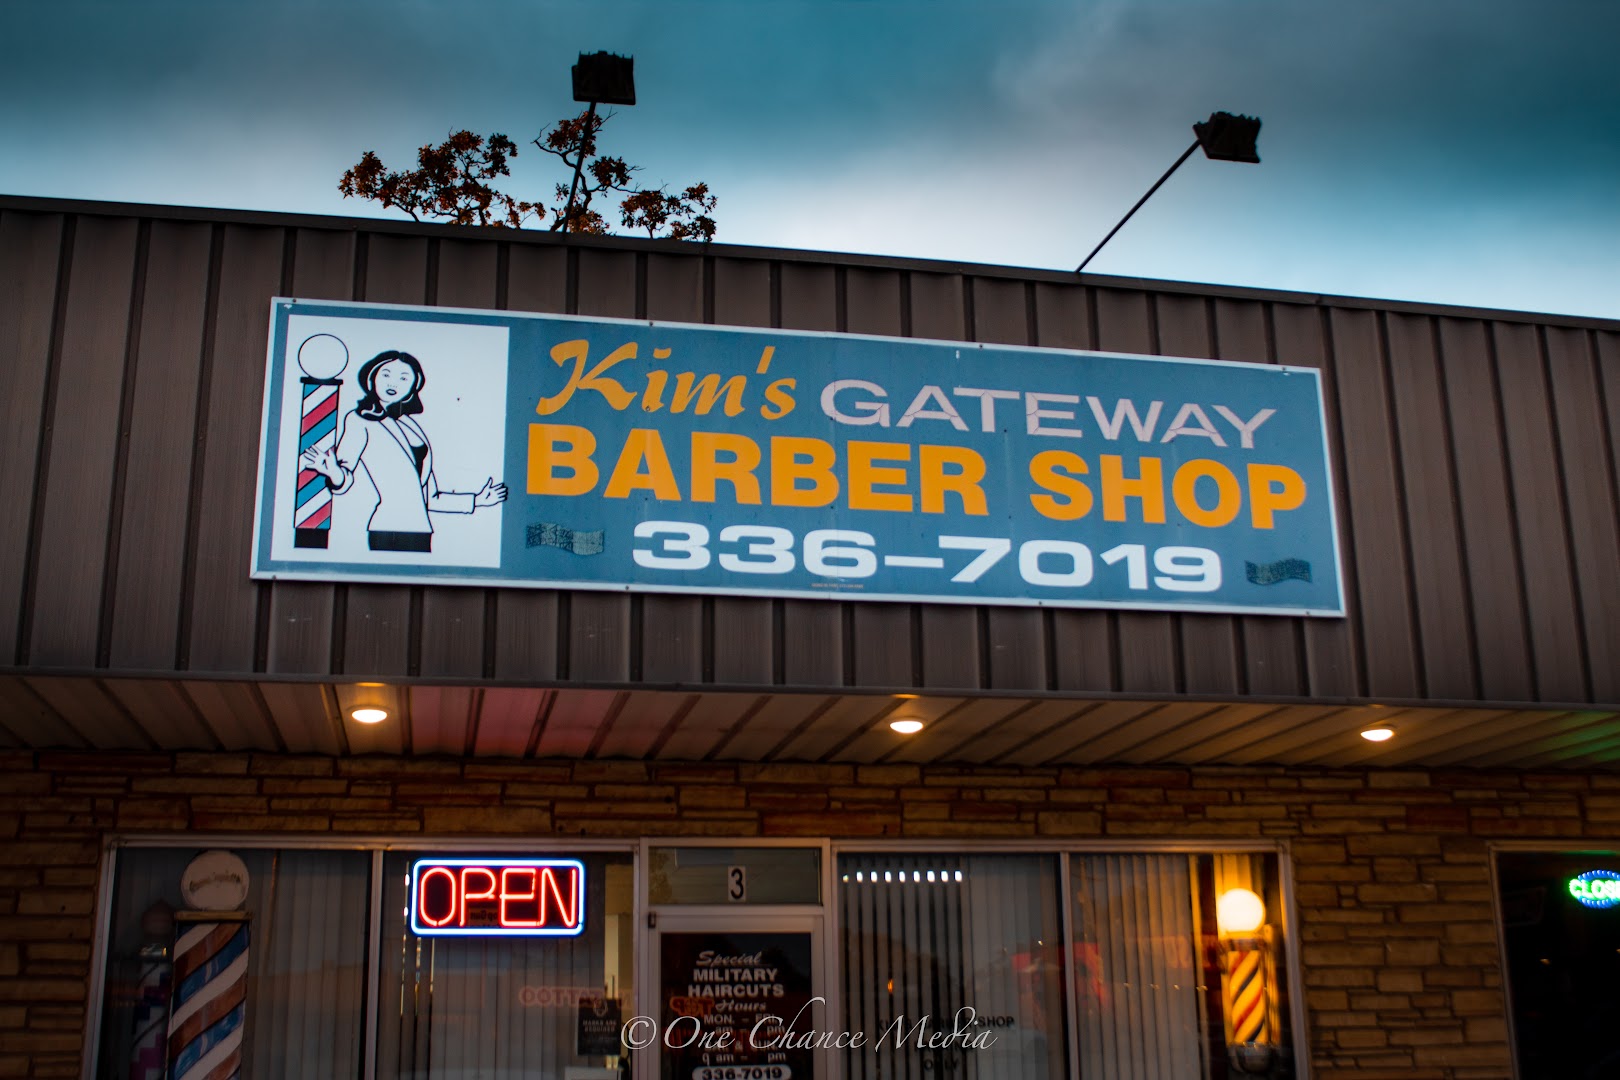 Kim's Gateway Barber Shop